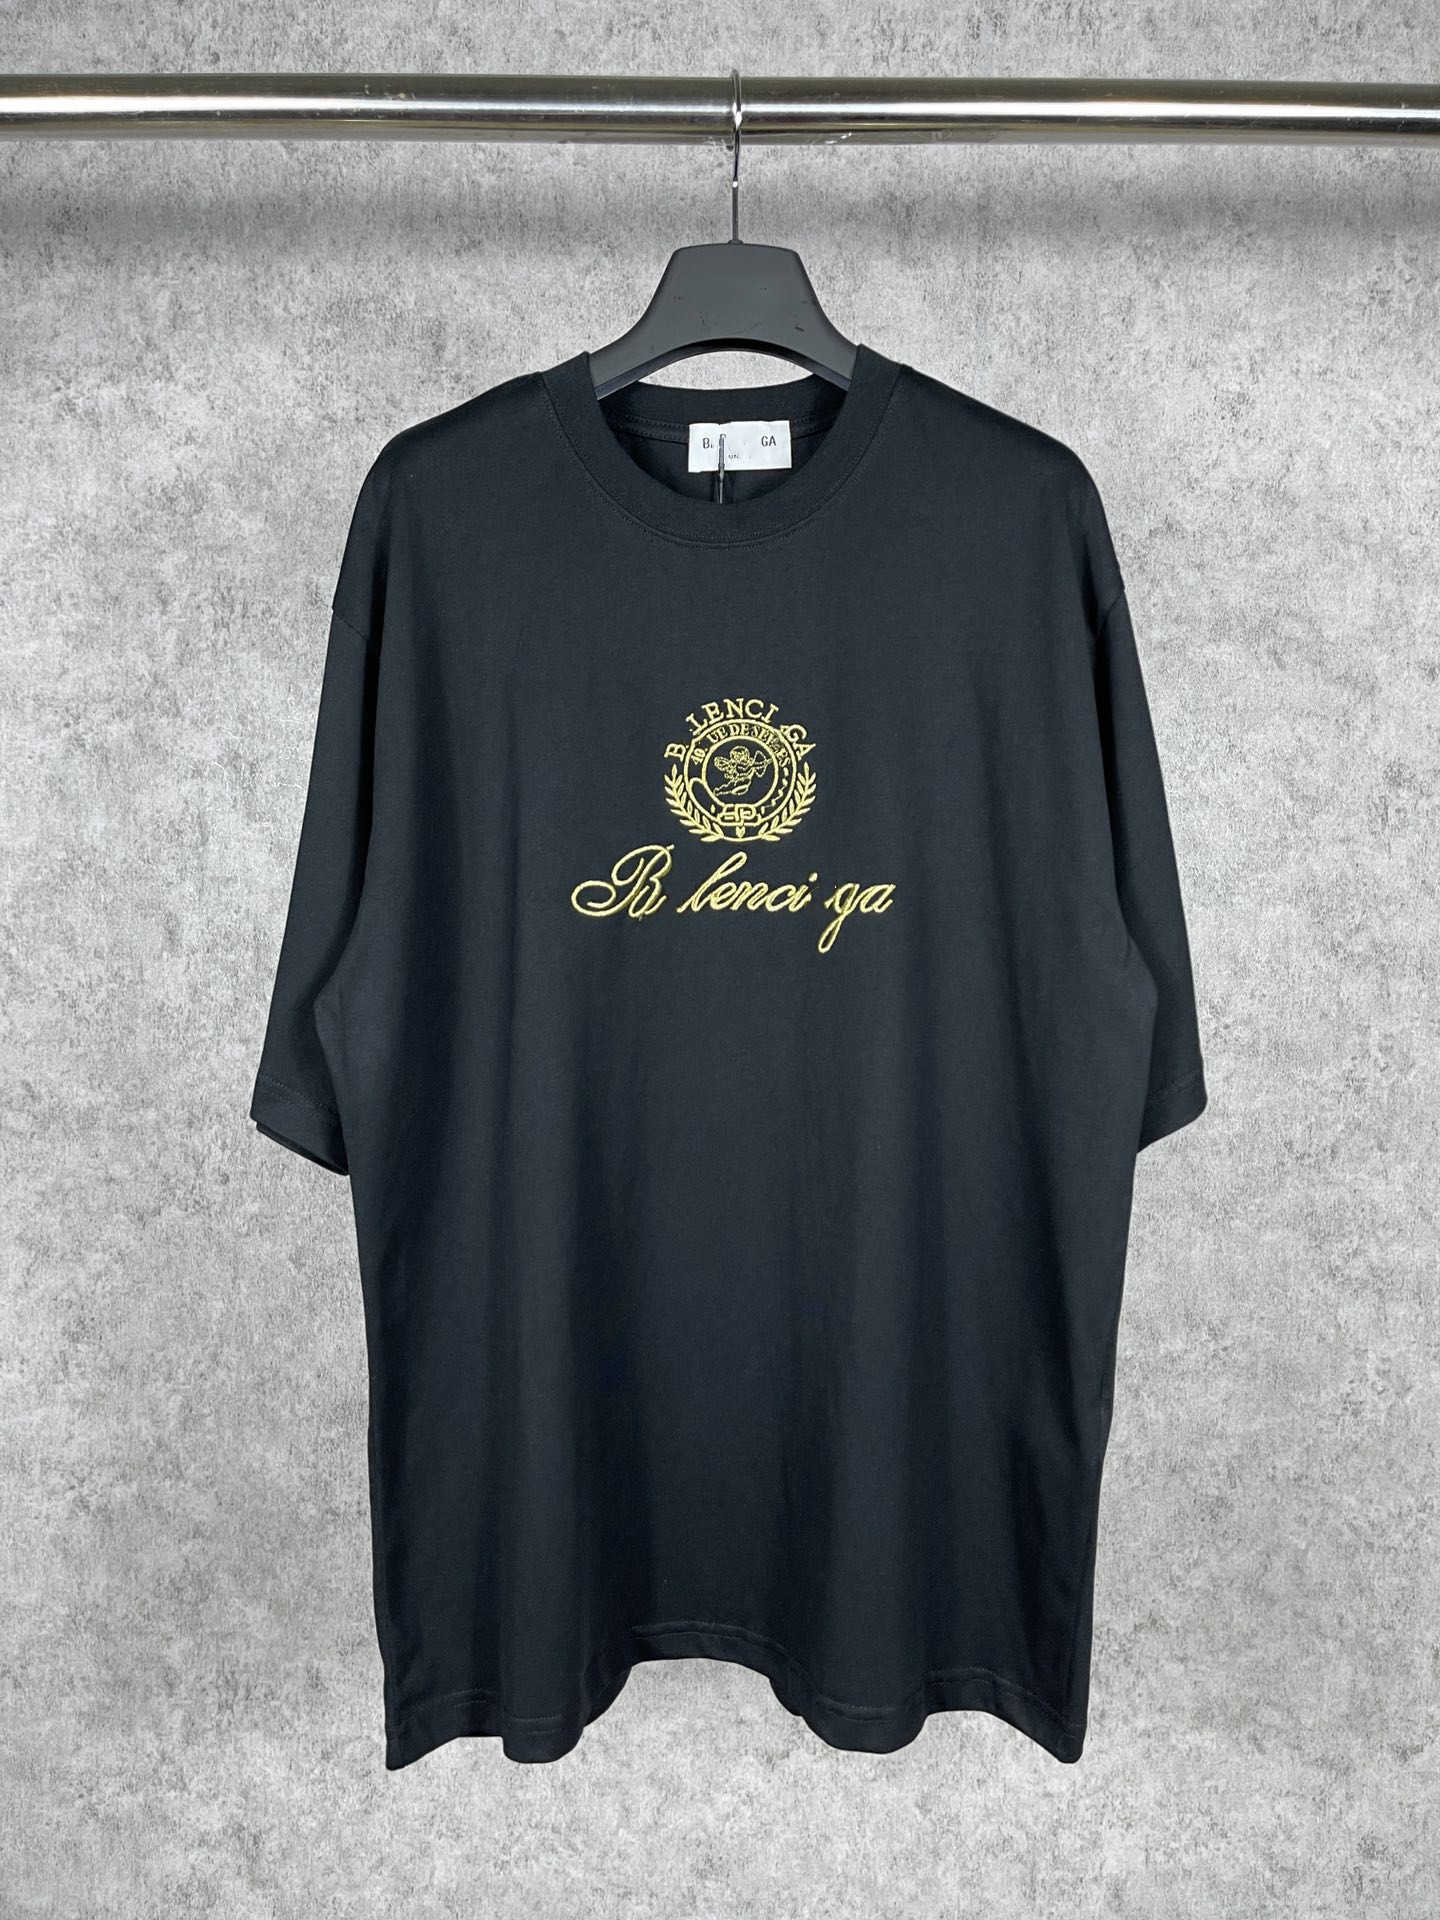 Designer-Sommerfrauen-T-Shirt High Edition-Sommer-Familien-Valentinstag-exklusives Amor-Goldstickerei-Hülsen-T-Shirt